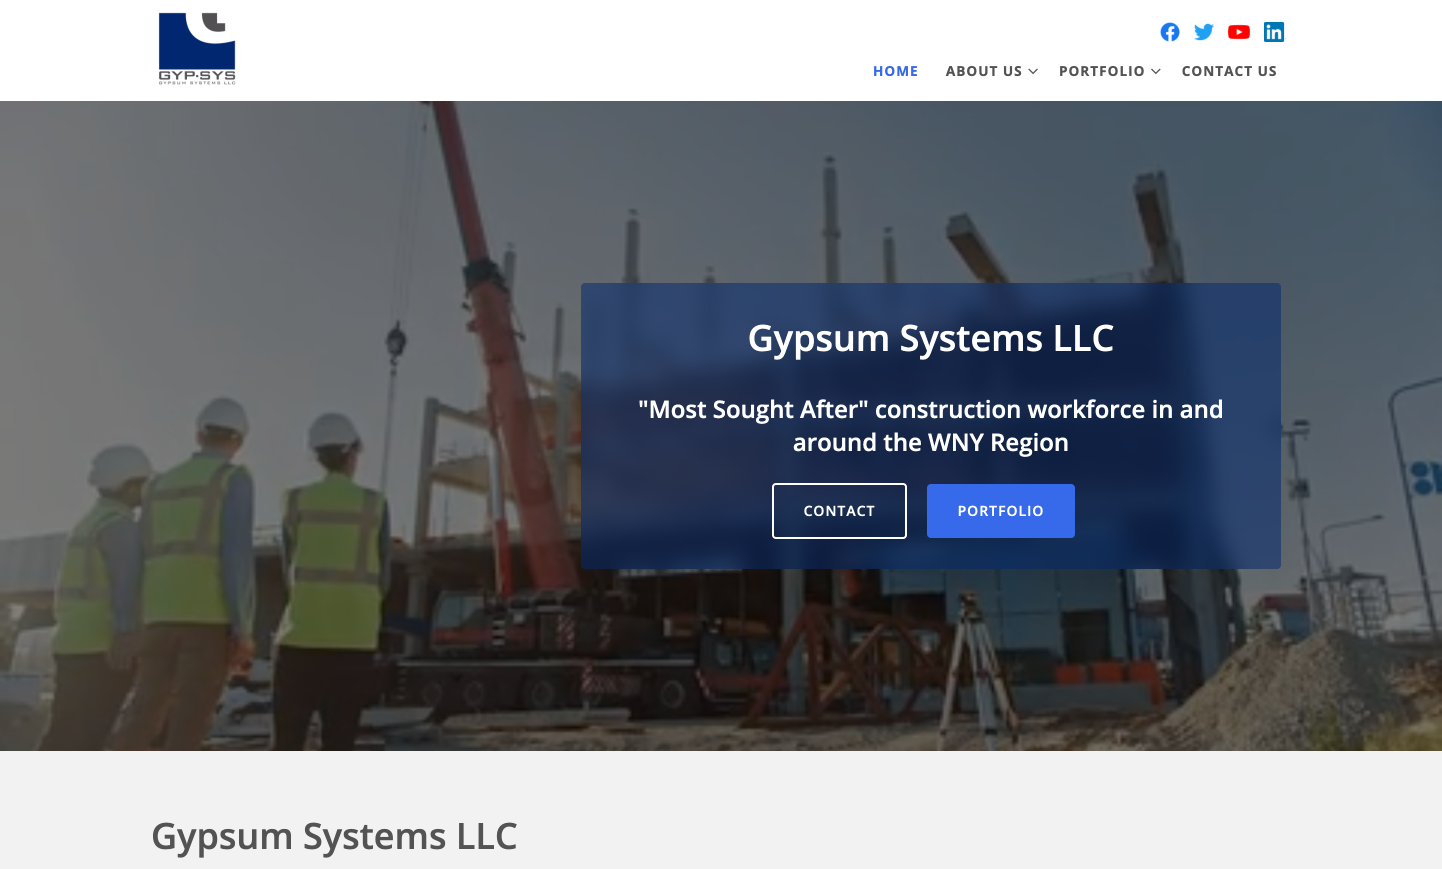 Gypsum Systems LLC